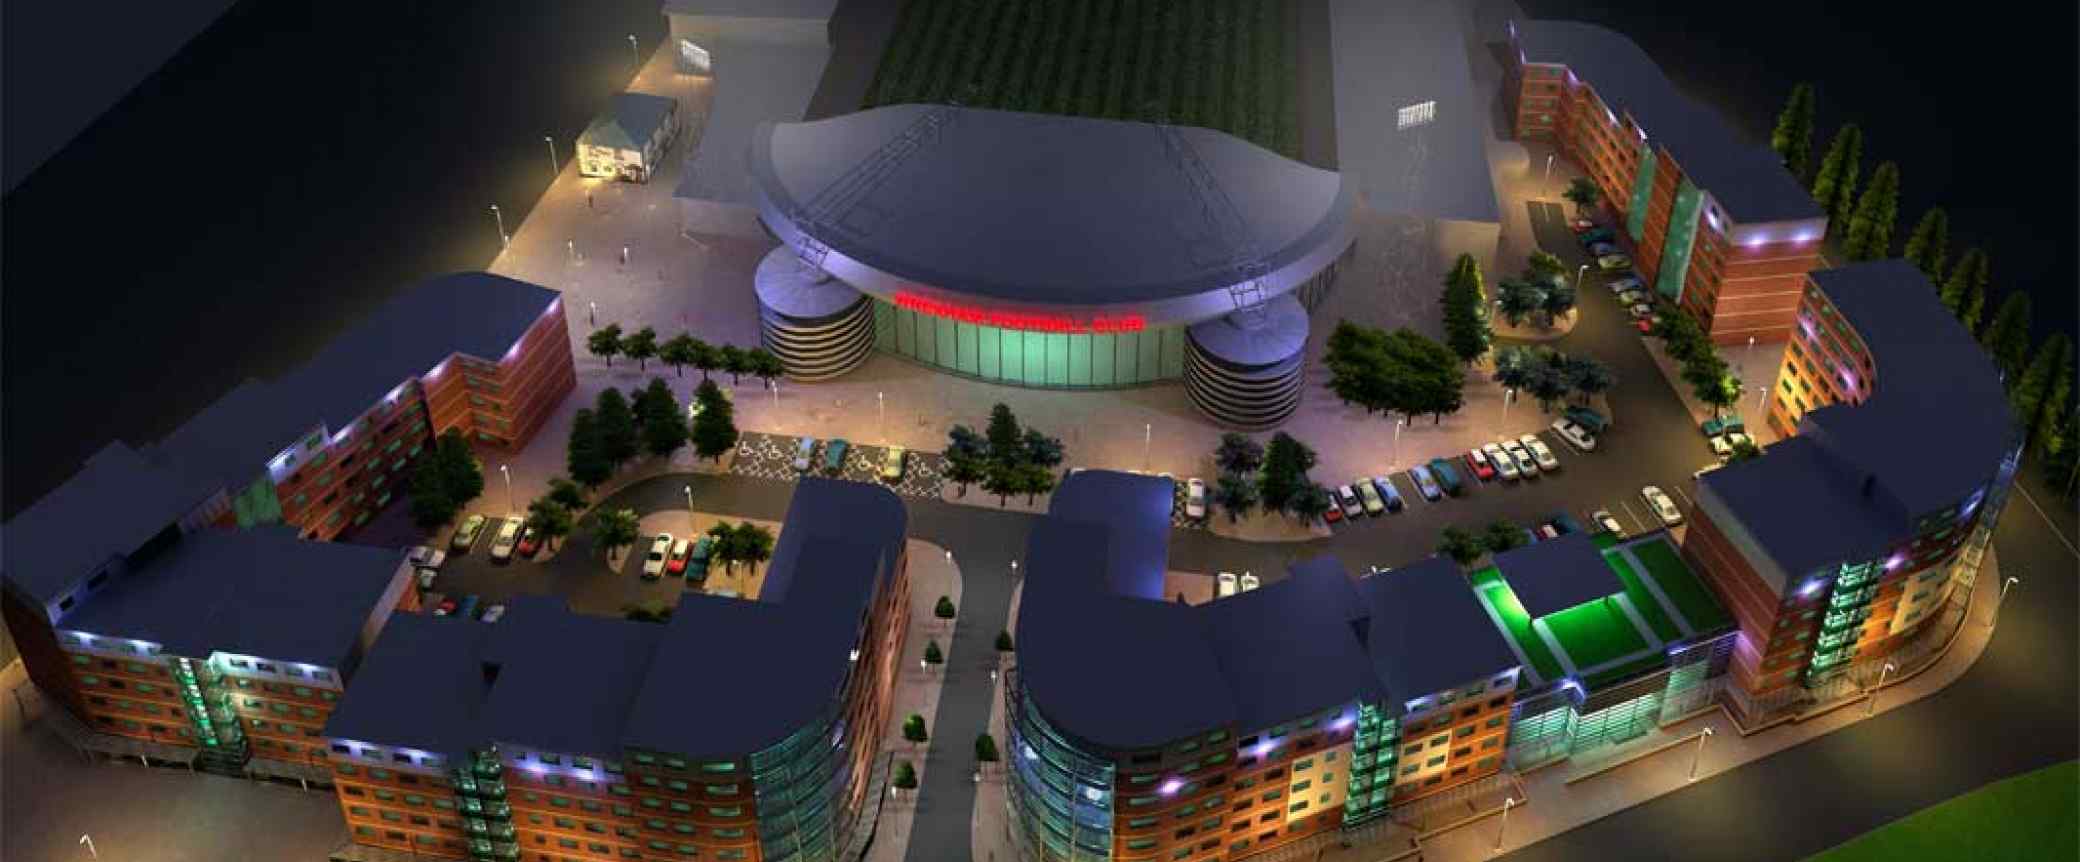 Wrexham Student Village night aerial architectural scheme plan